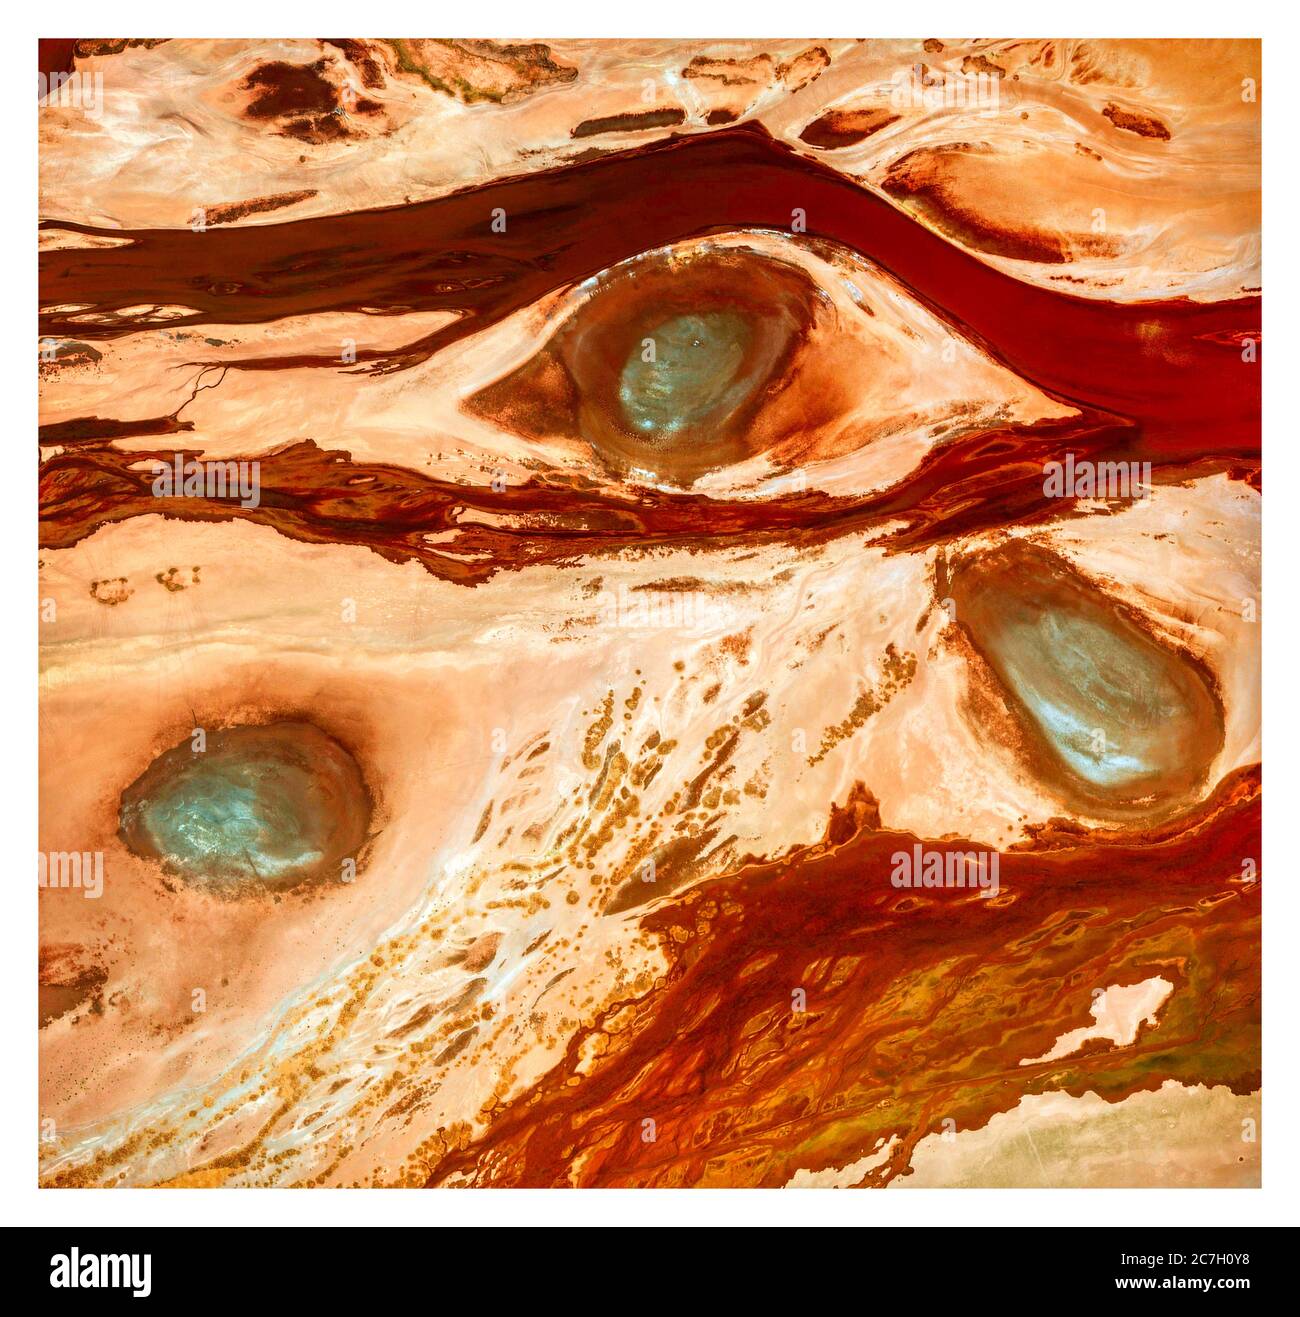 Les yeux qui regardent le ciel, la vue satellite de la Bolivie, les lacs verts entre les terres arides et les rivières de boue. Vue sur la nature et l'antenne. Réchauffement climatique Banque D'Images